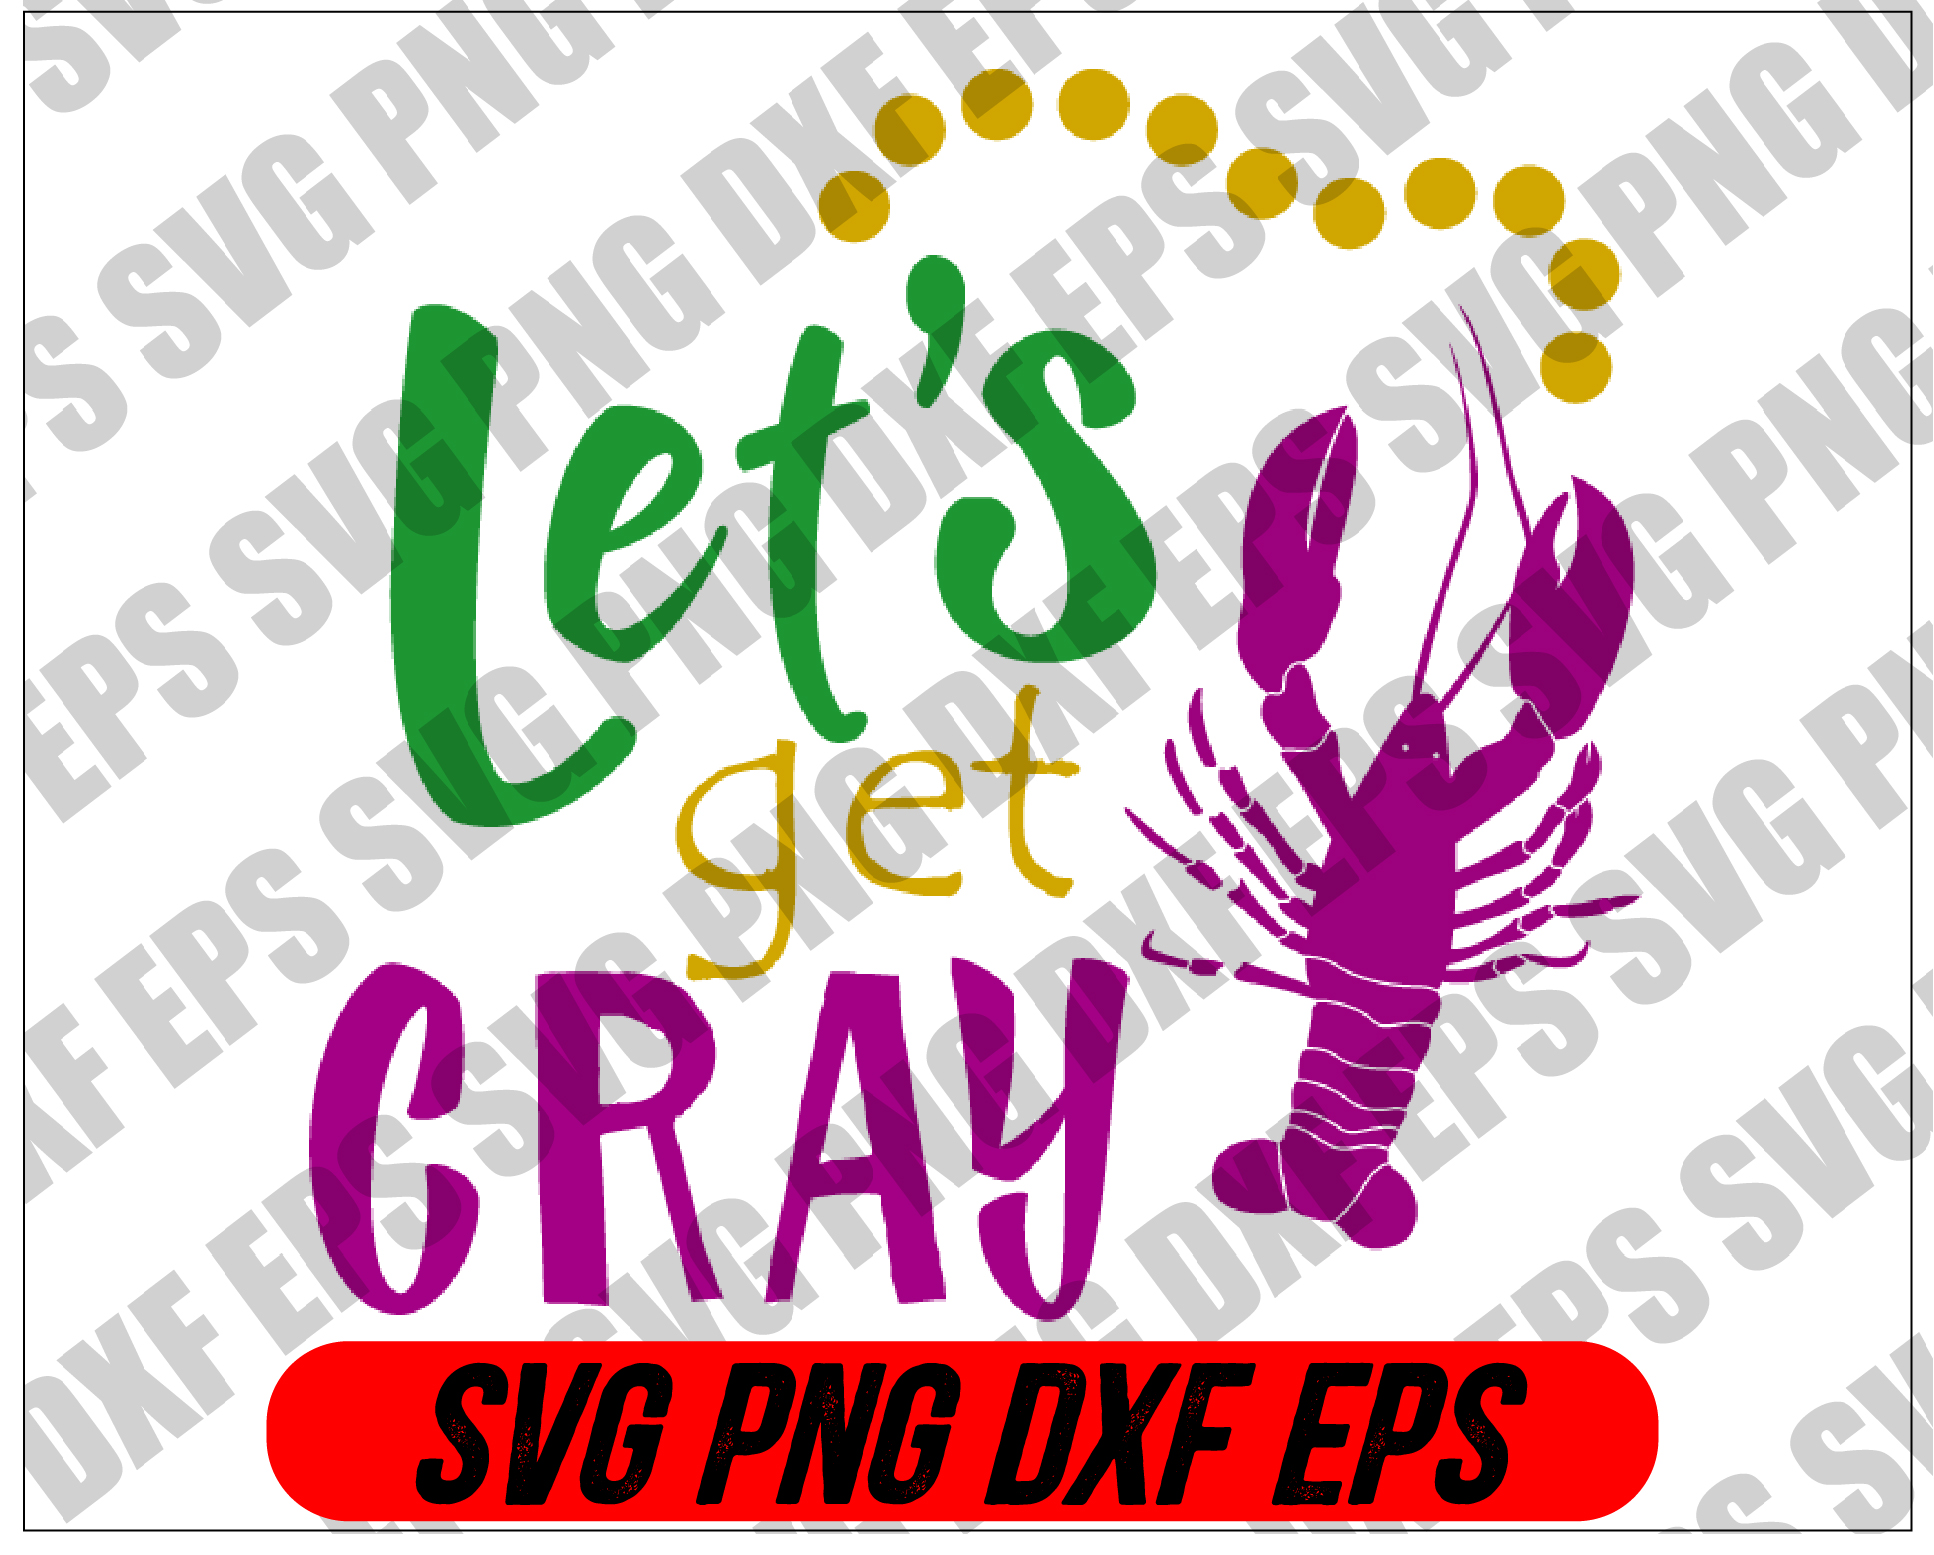 file wtm 02 Mardi Gras SVG - Let's get gray svg, png, dxf, eps digital download